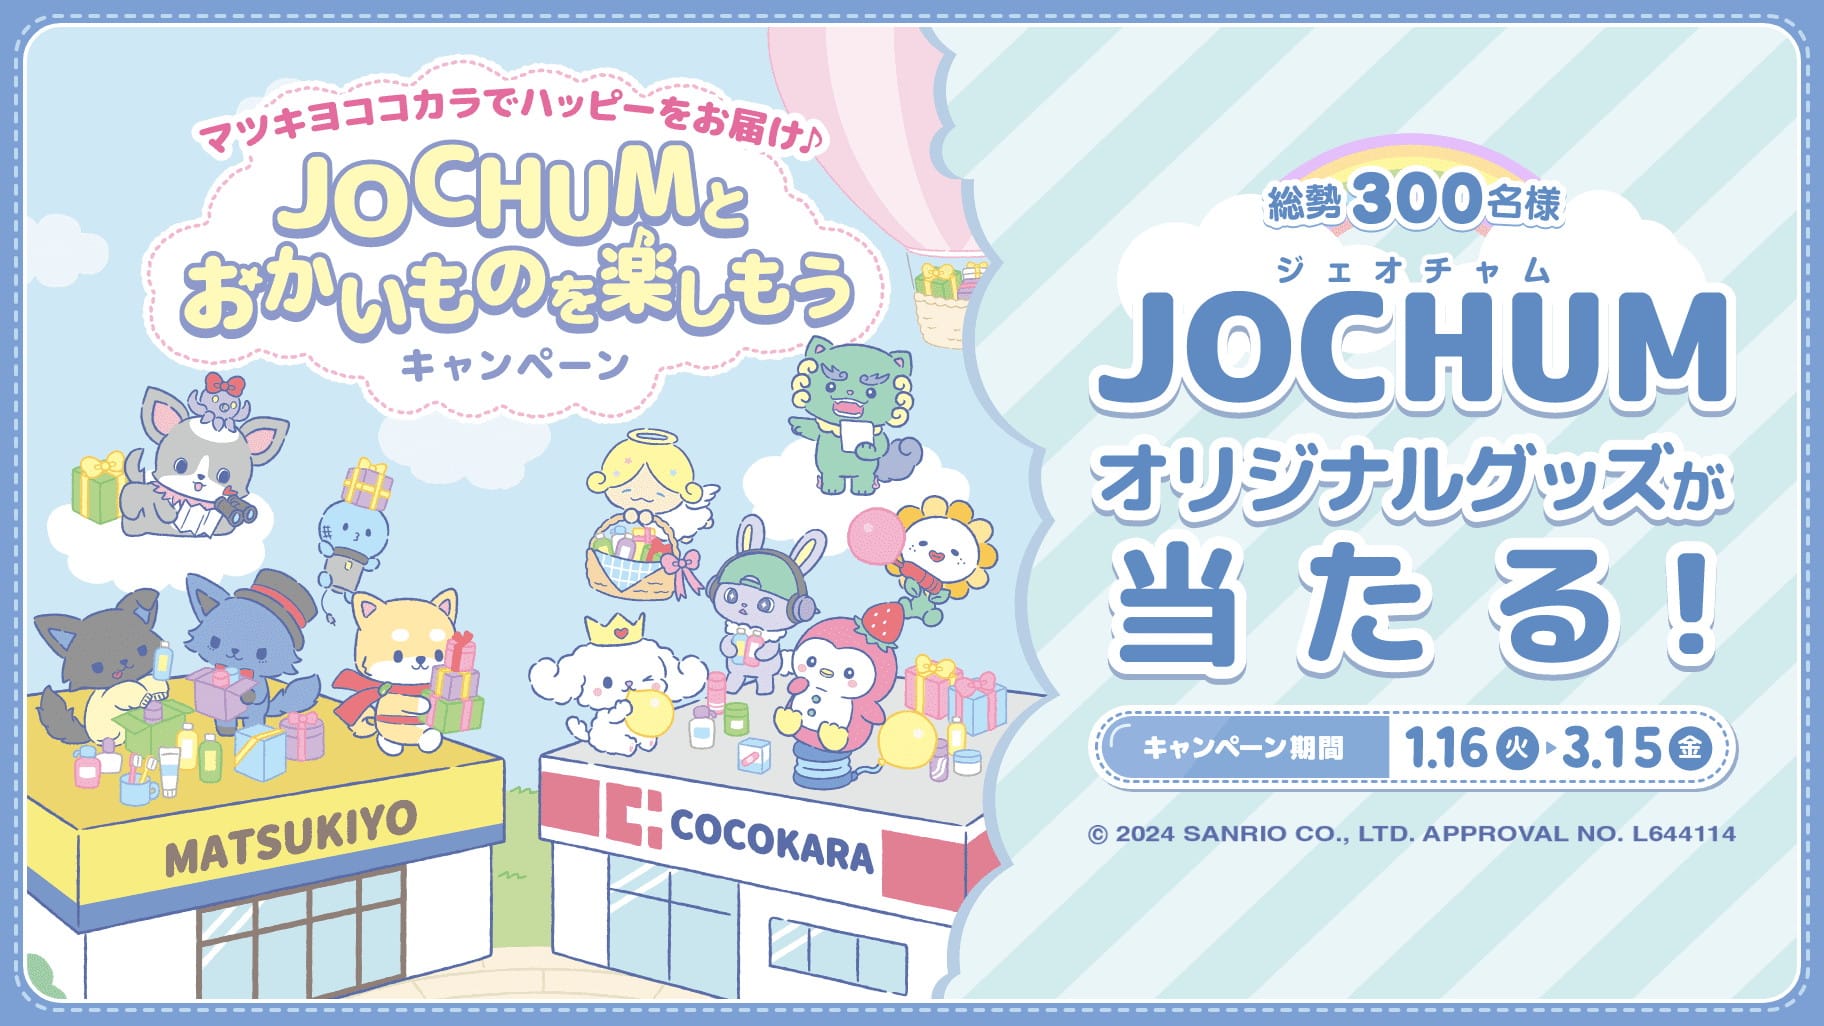 JOCHUM × マツキヨココカラ全国 1月16日よりコラボキャンペーン開催!